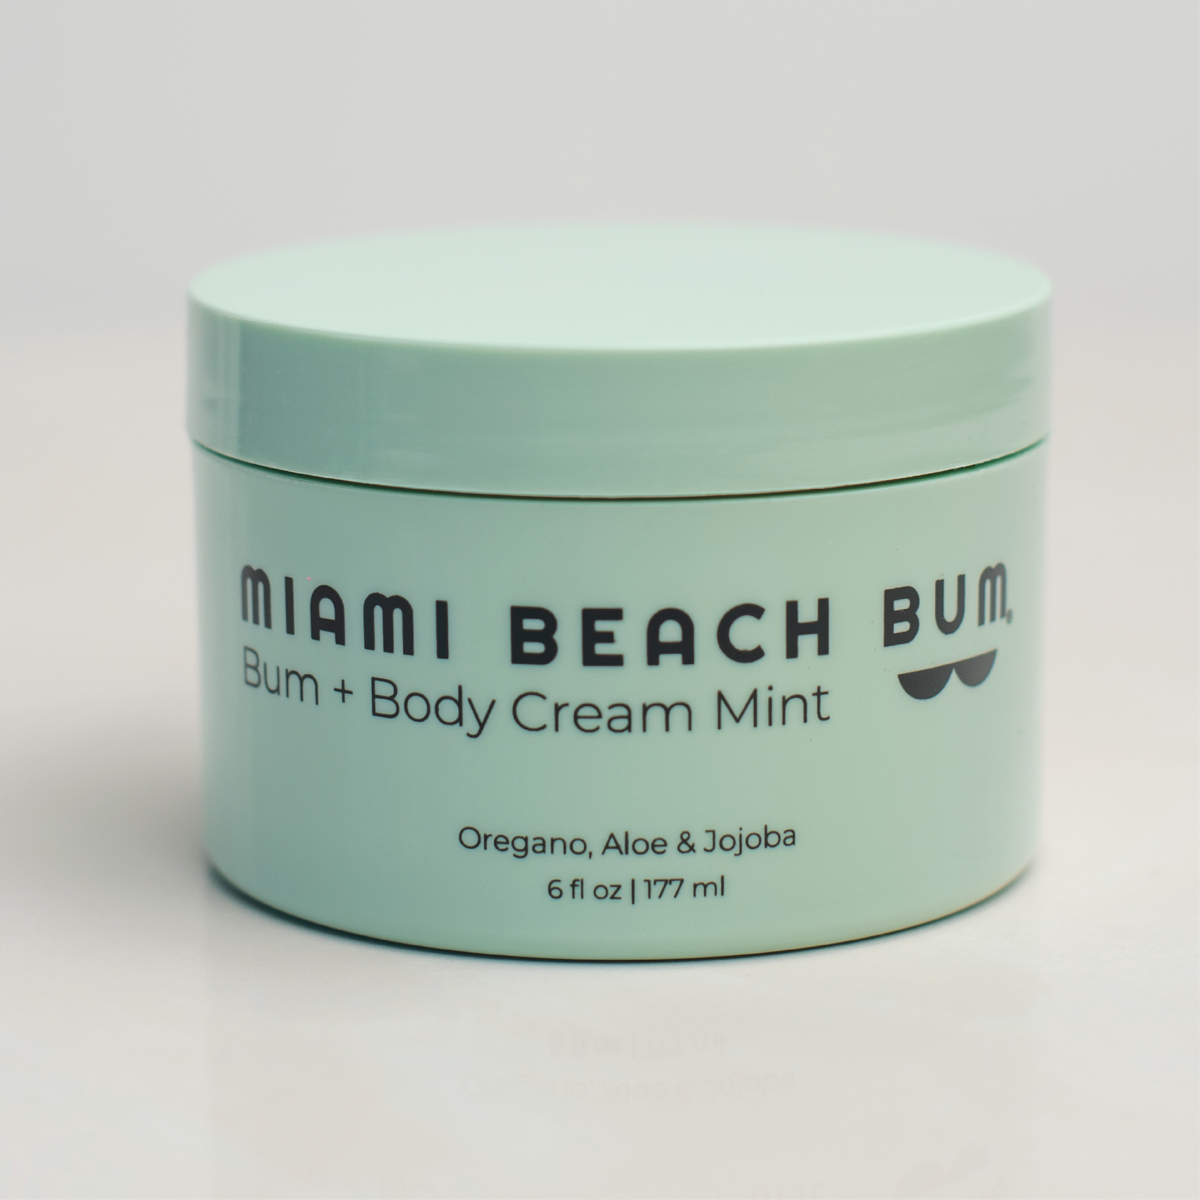 Bum + Body Cream